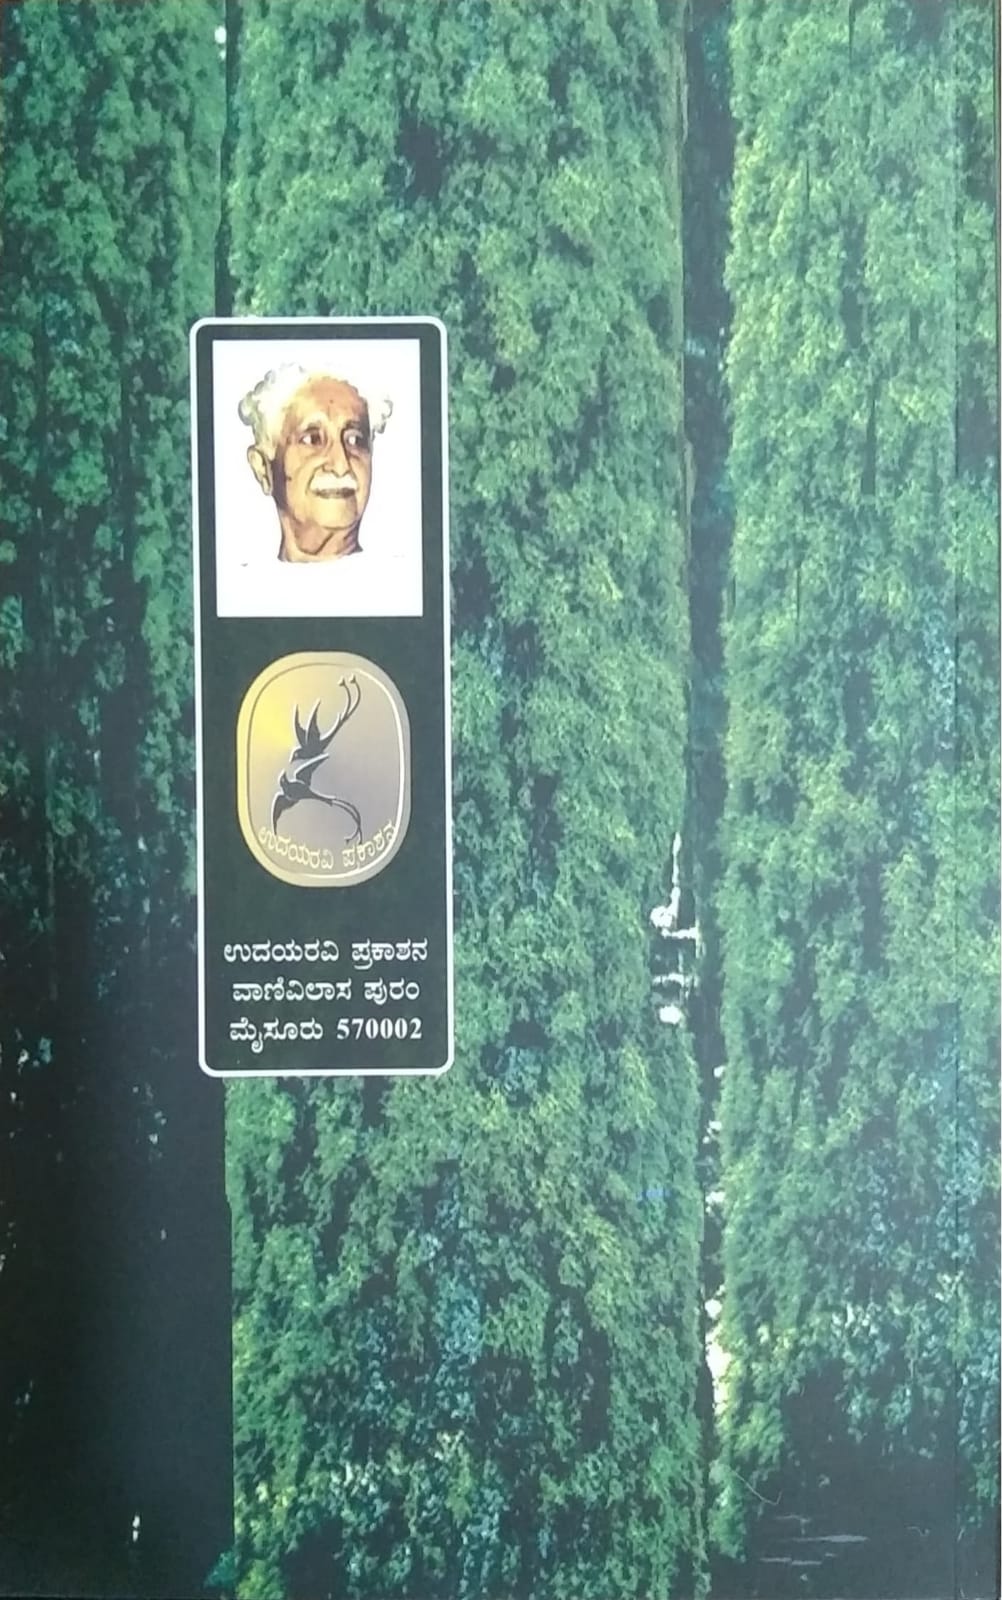 Chittangada, Collection of Poems, Written by Kuvempu, Published by Pustaka Prakashana